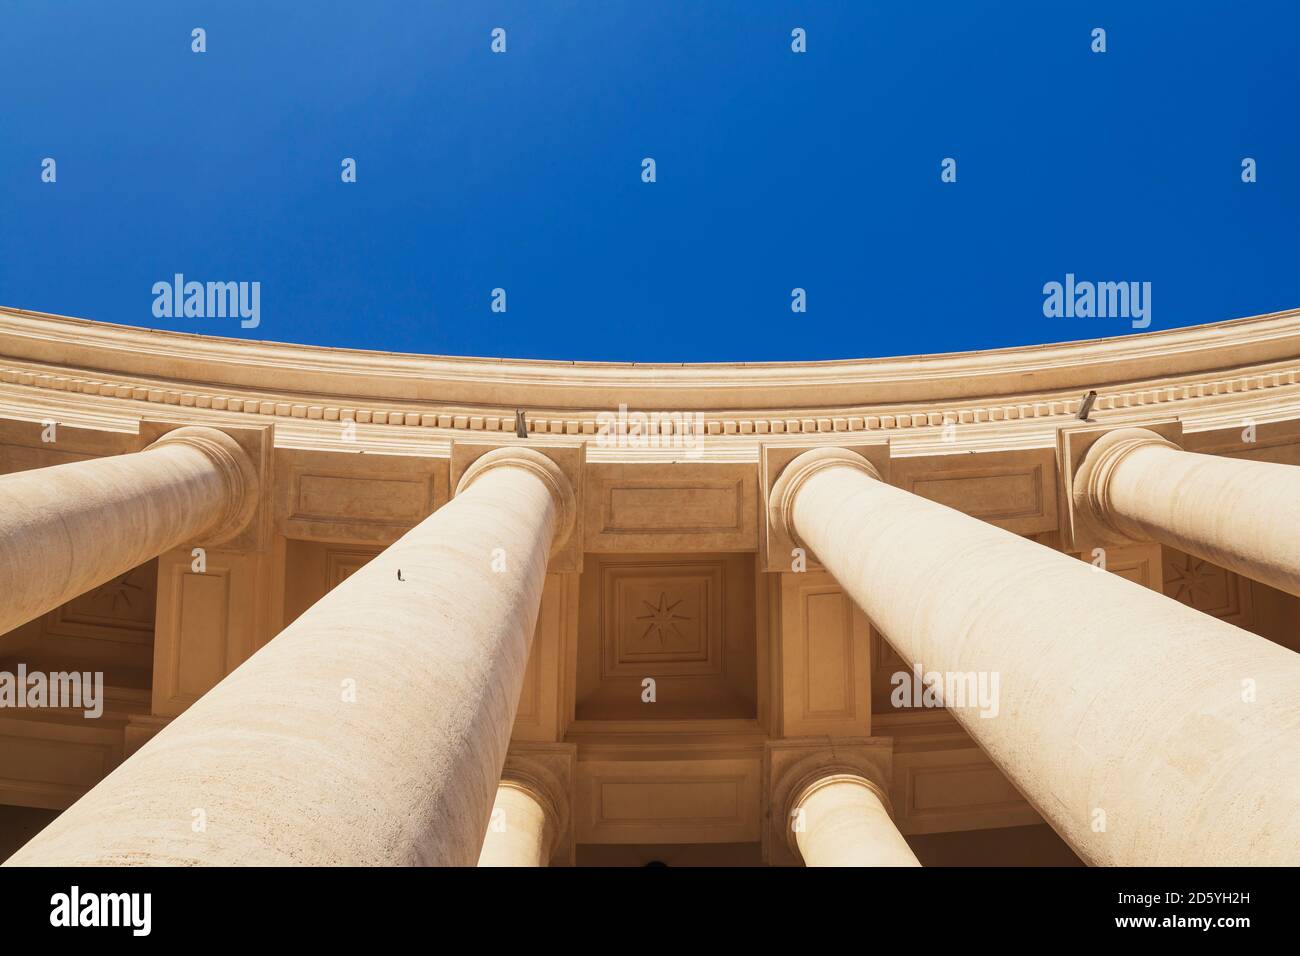 Italie, Rome, colonnes d'une arcade sur la place Saint-Pierre Banque D'Images